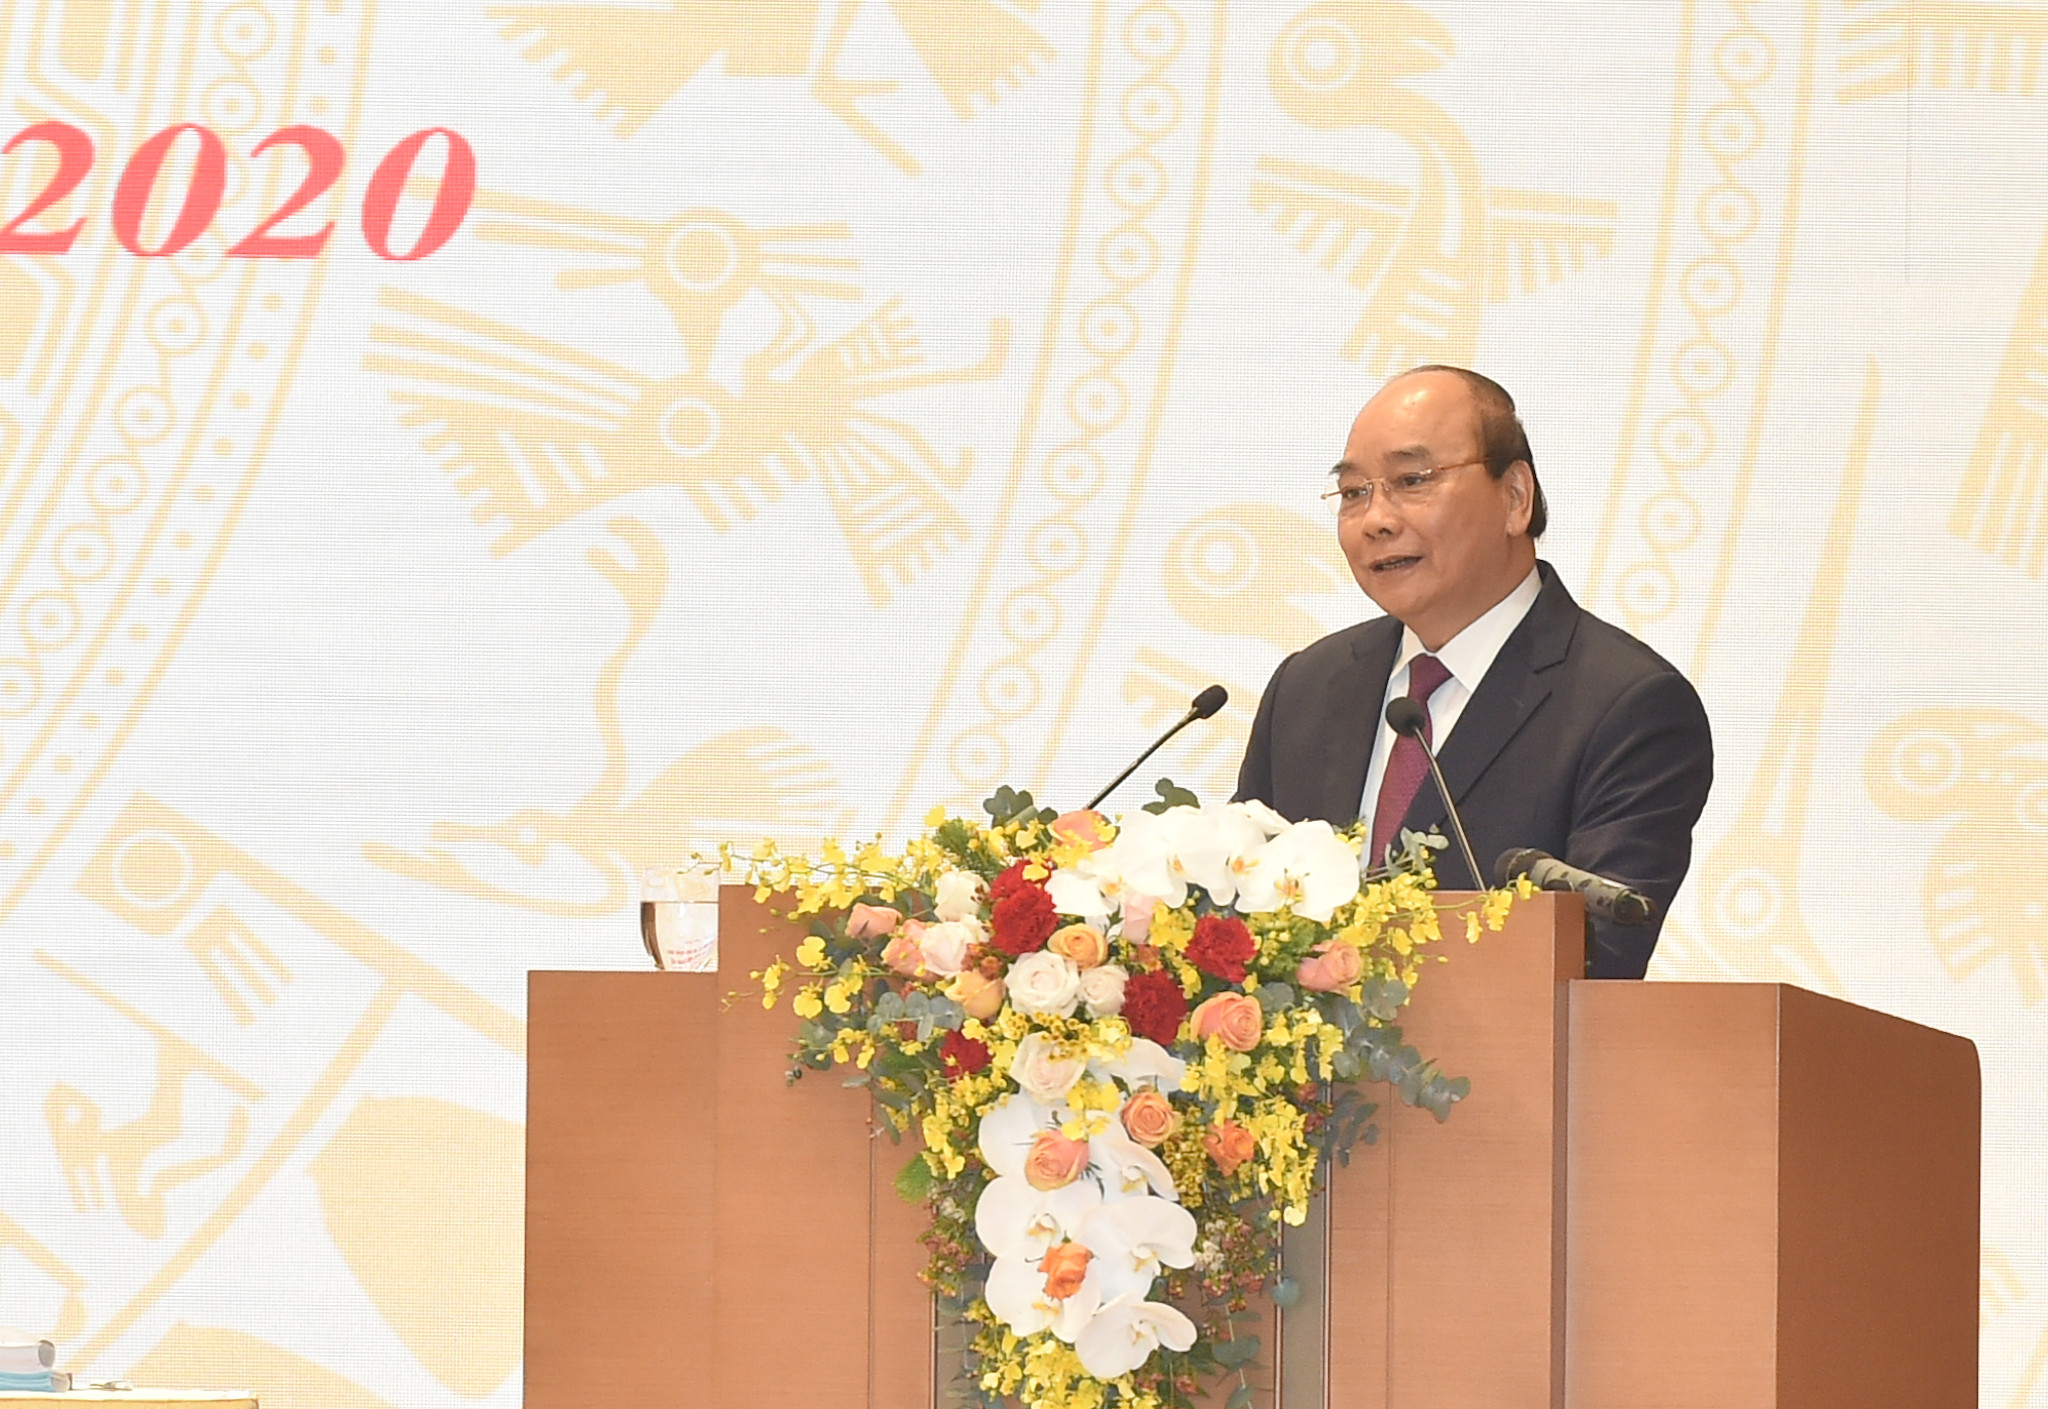 Thủ tướng Nguyễn Xuân Phúc phát biểu khai mạc Hội nghị. Ảnh: VGP/Quang Hiếu